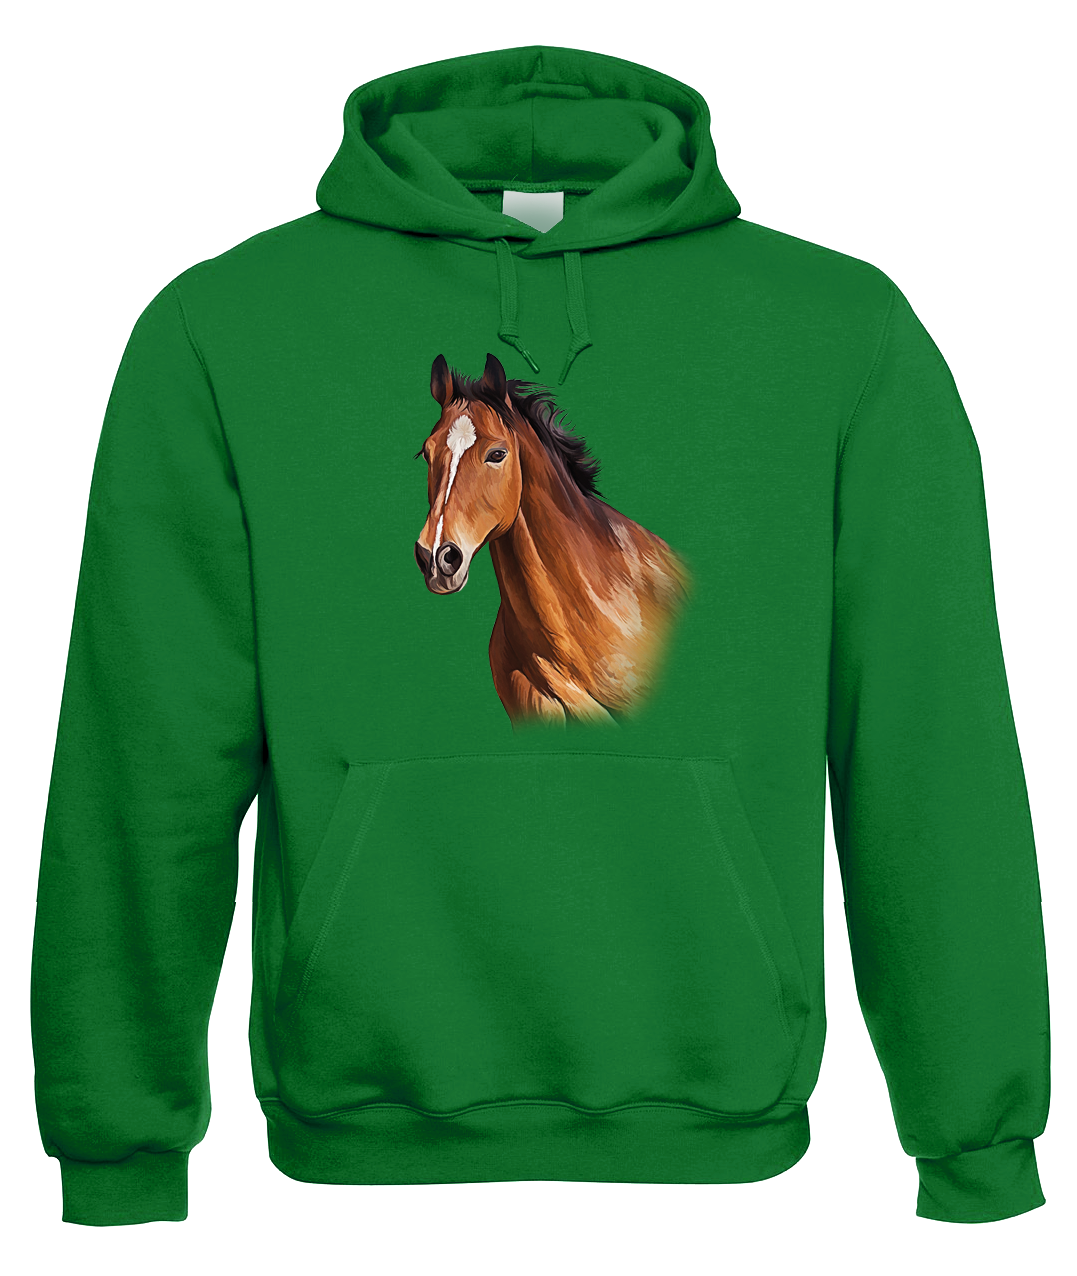 Mikina s koněm - Hnědák Velikost: M, Barva: Zelená